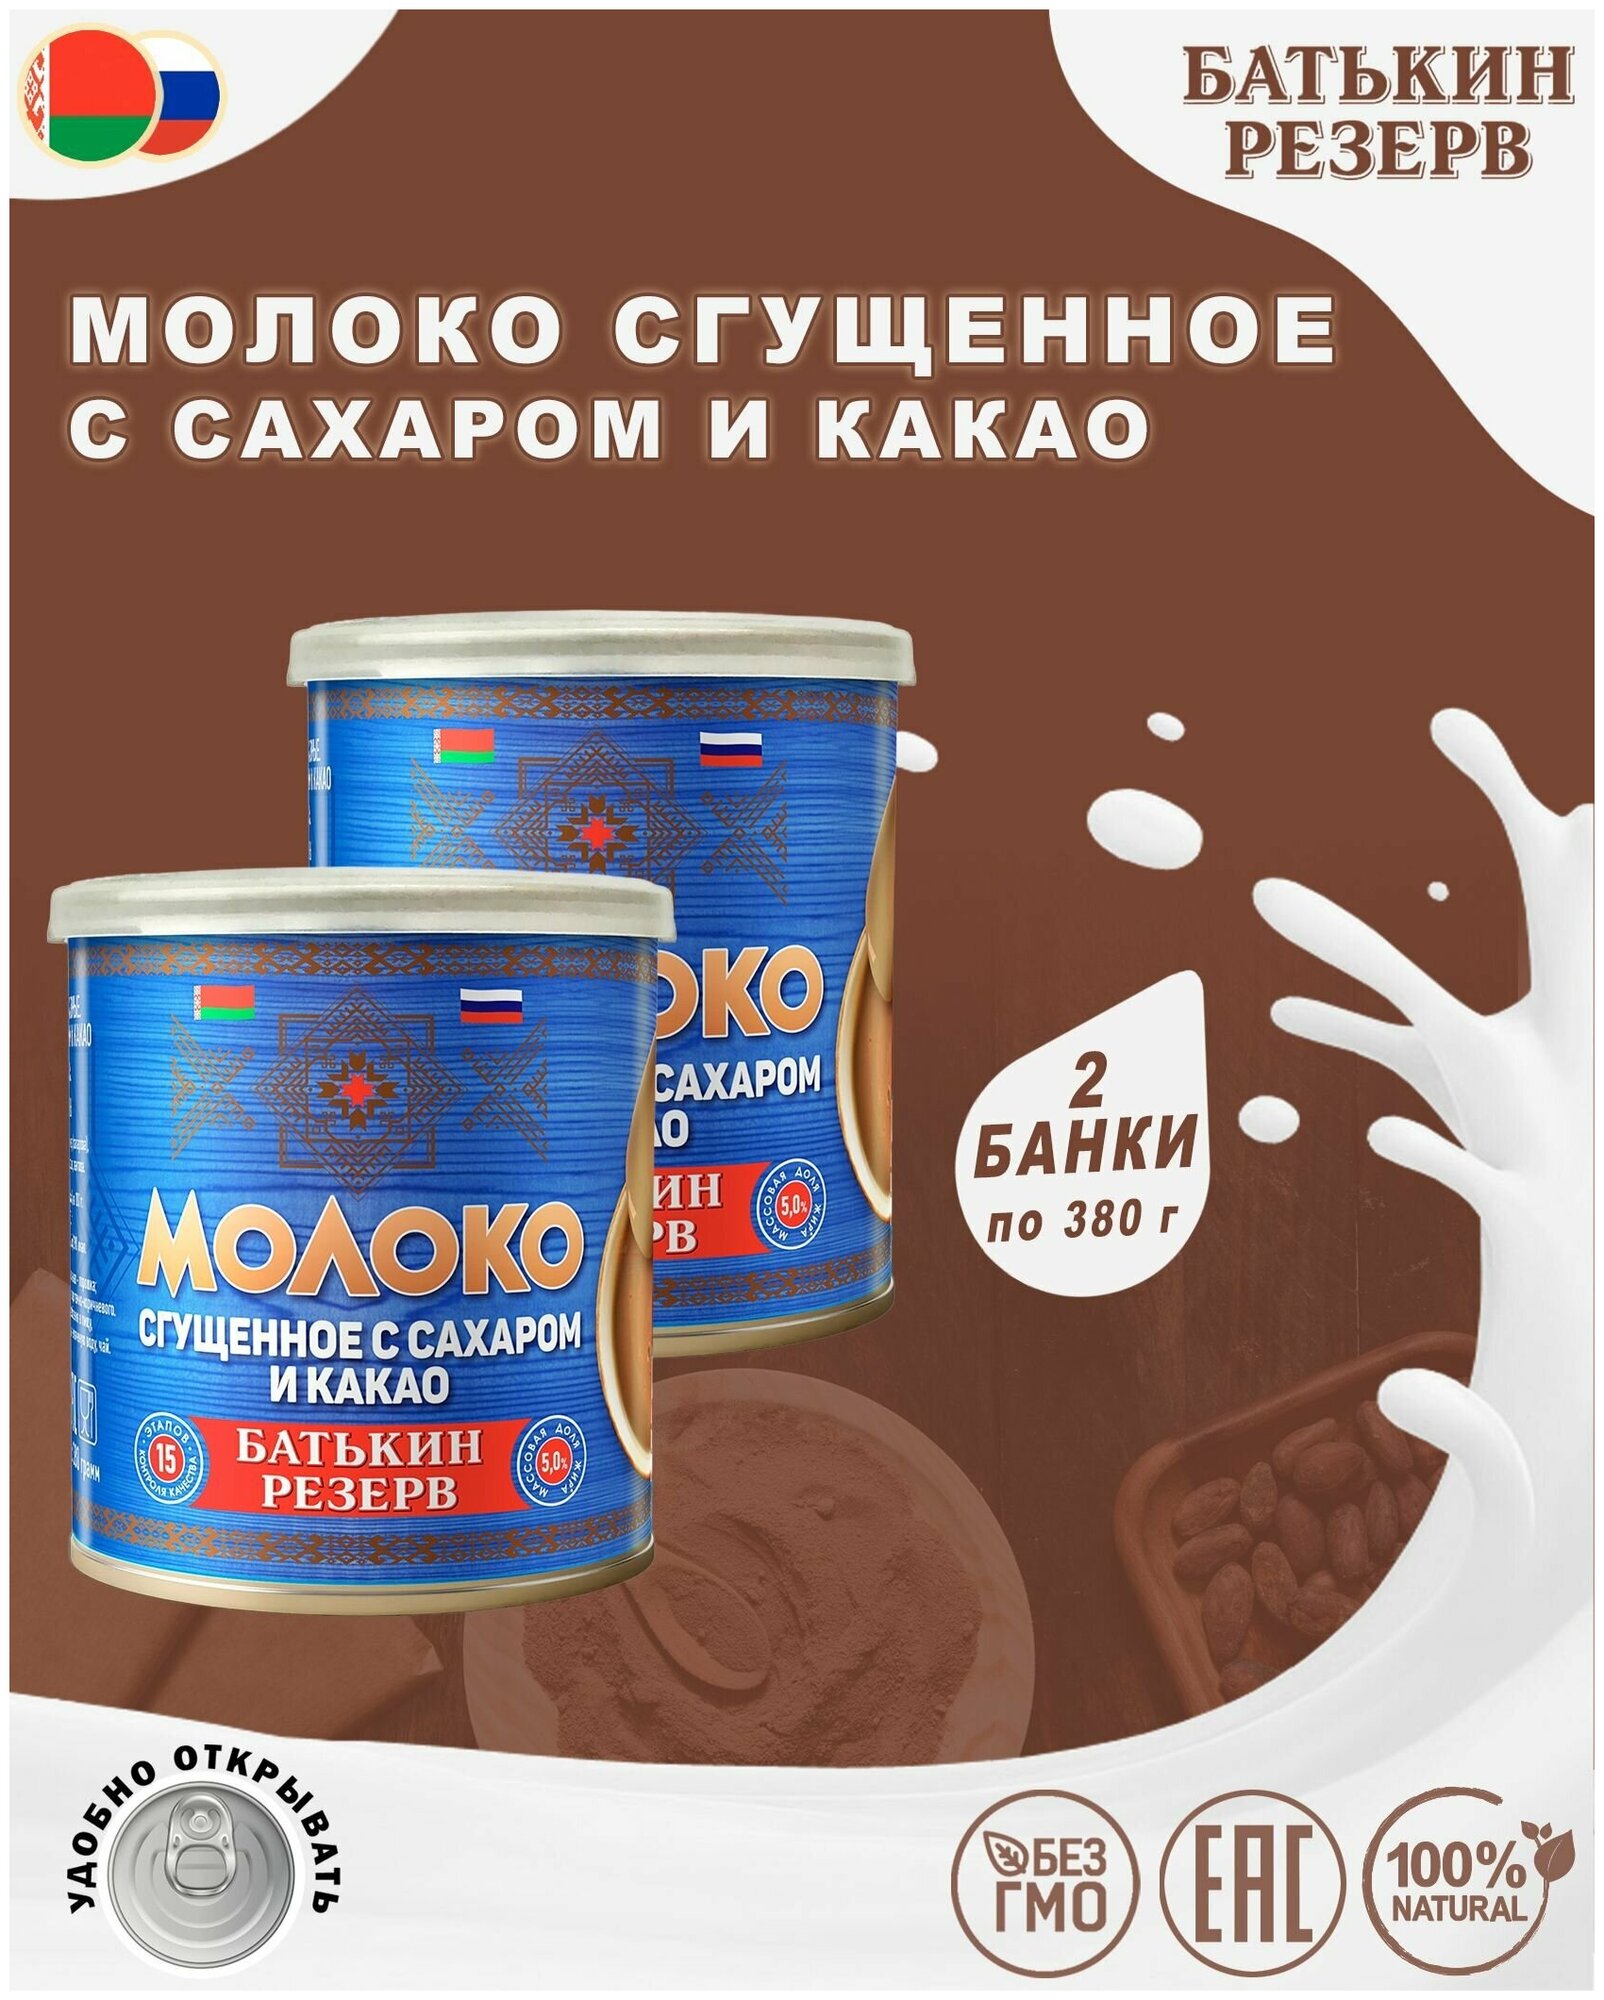 Молоко сгущенное с сахаром и какао, Батькин резерв, 2 шт. по 380 г